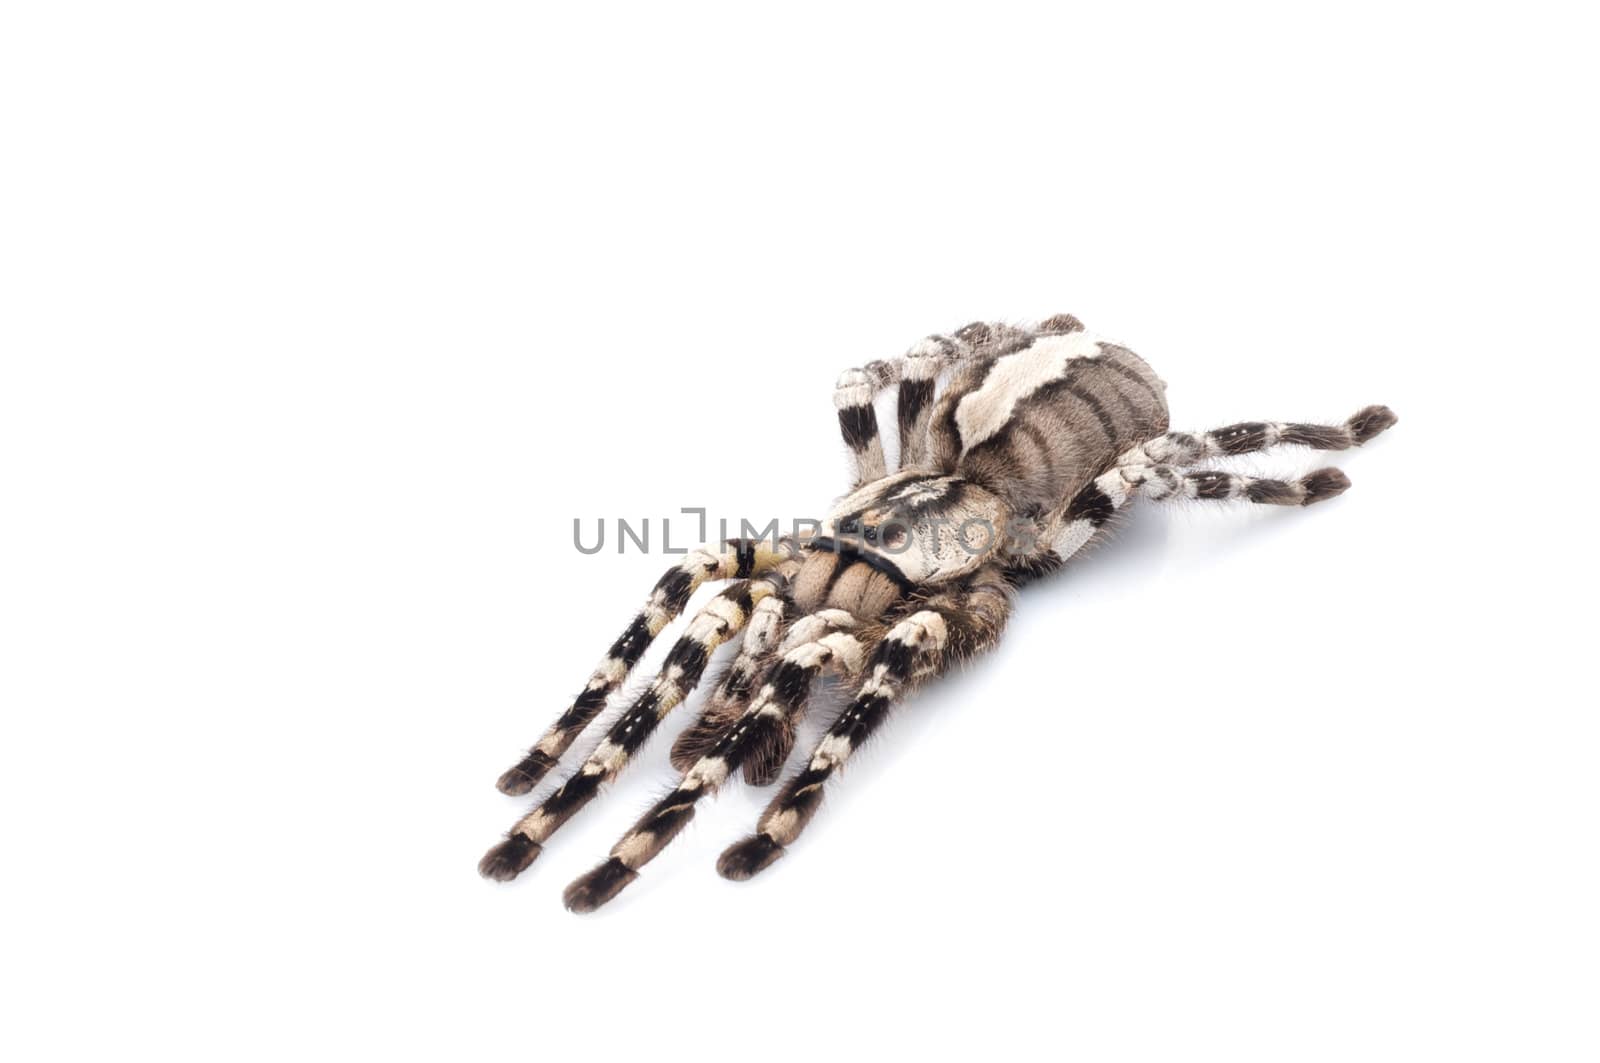 Indian Ornamental Tarantula  by Njean